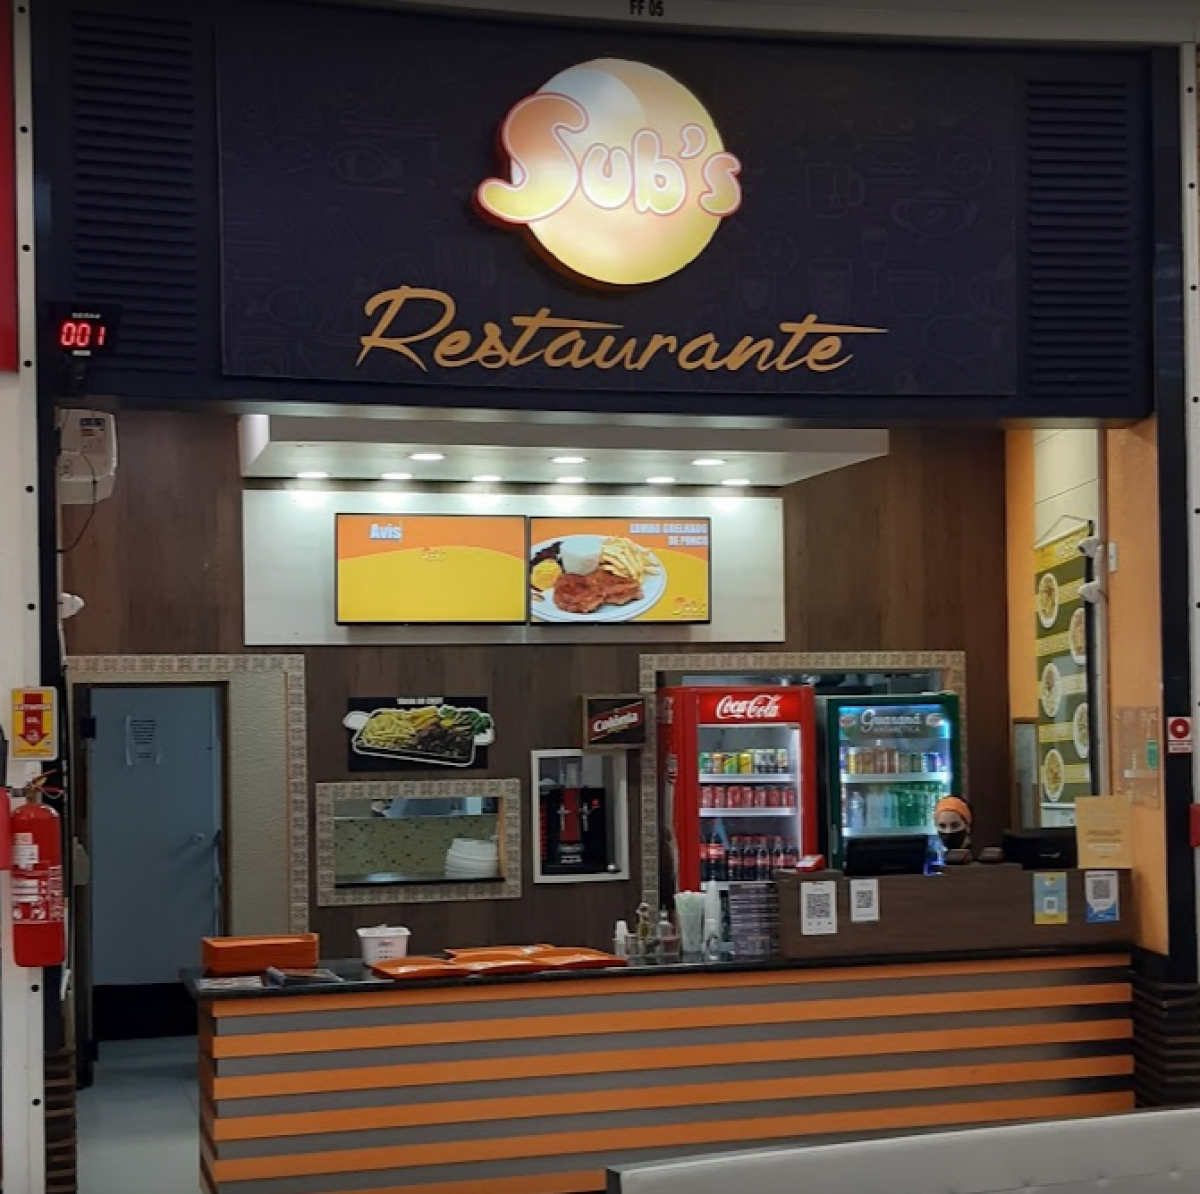 Vendo Restaurante brasileiro em um shopping